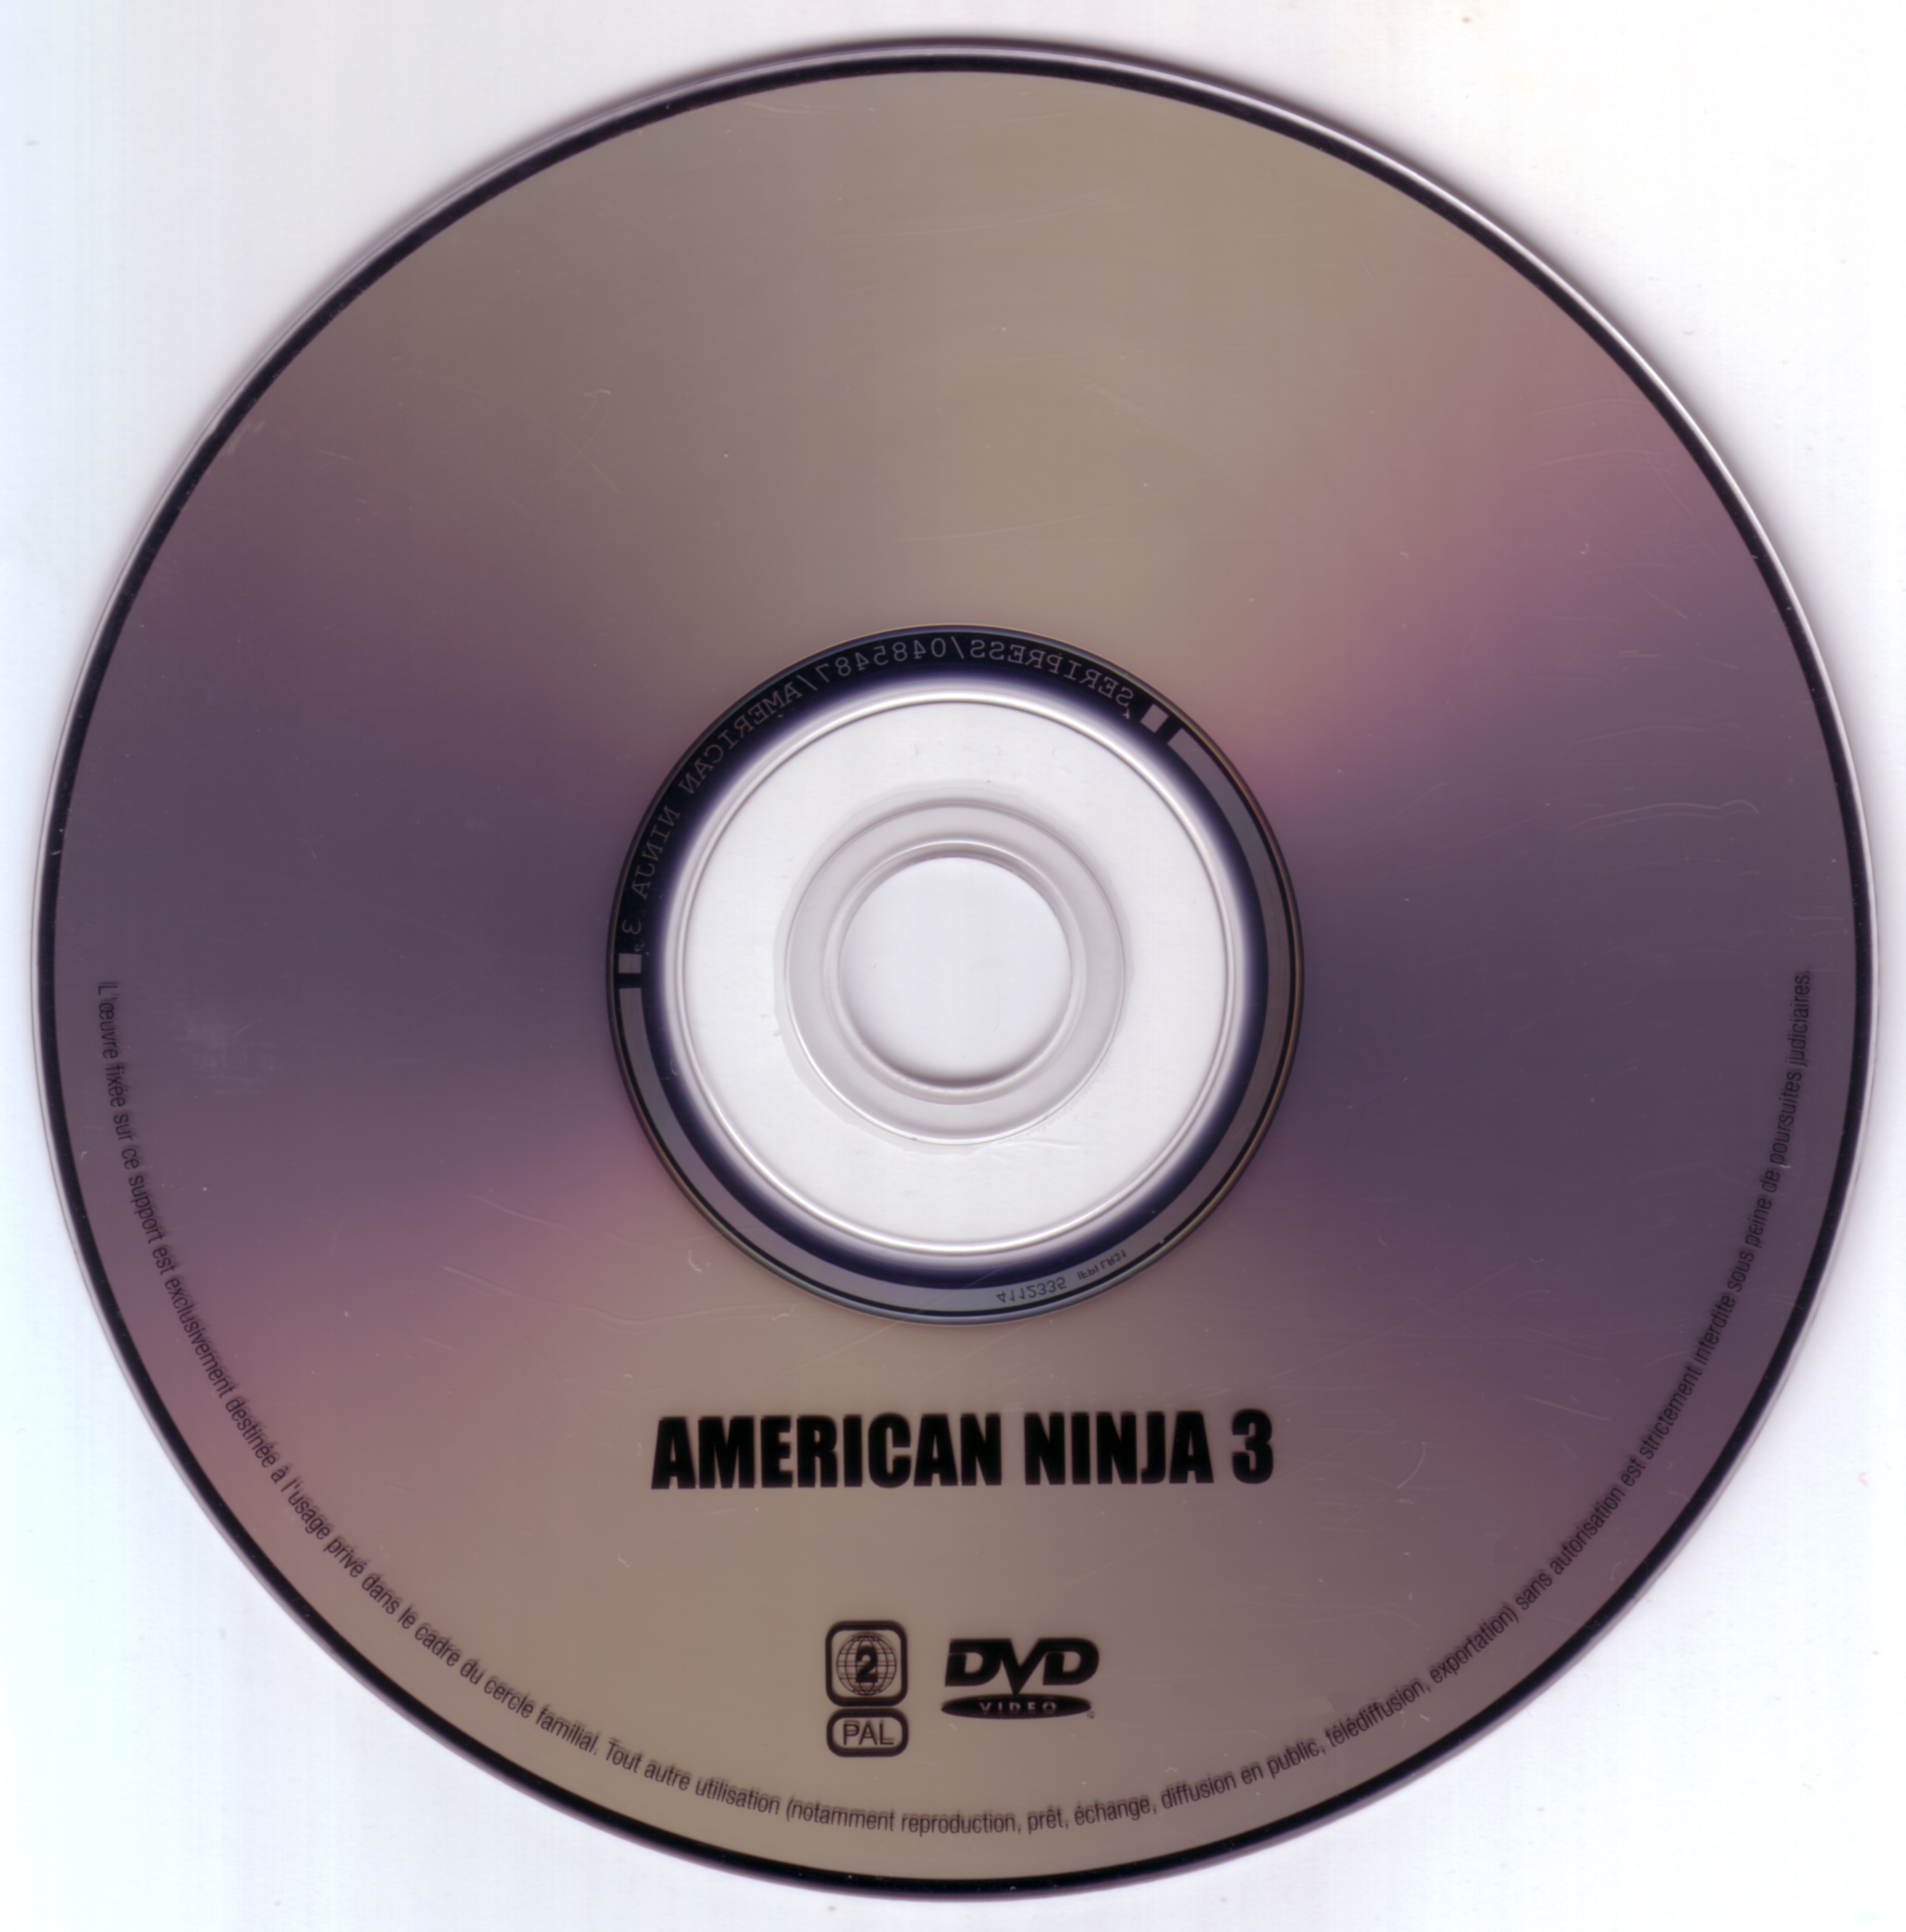 American ninja 3 v2